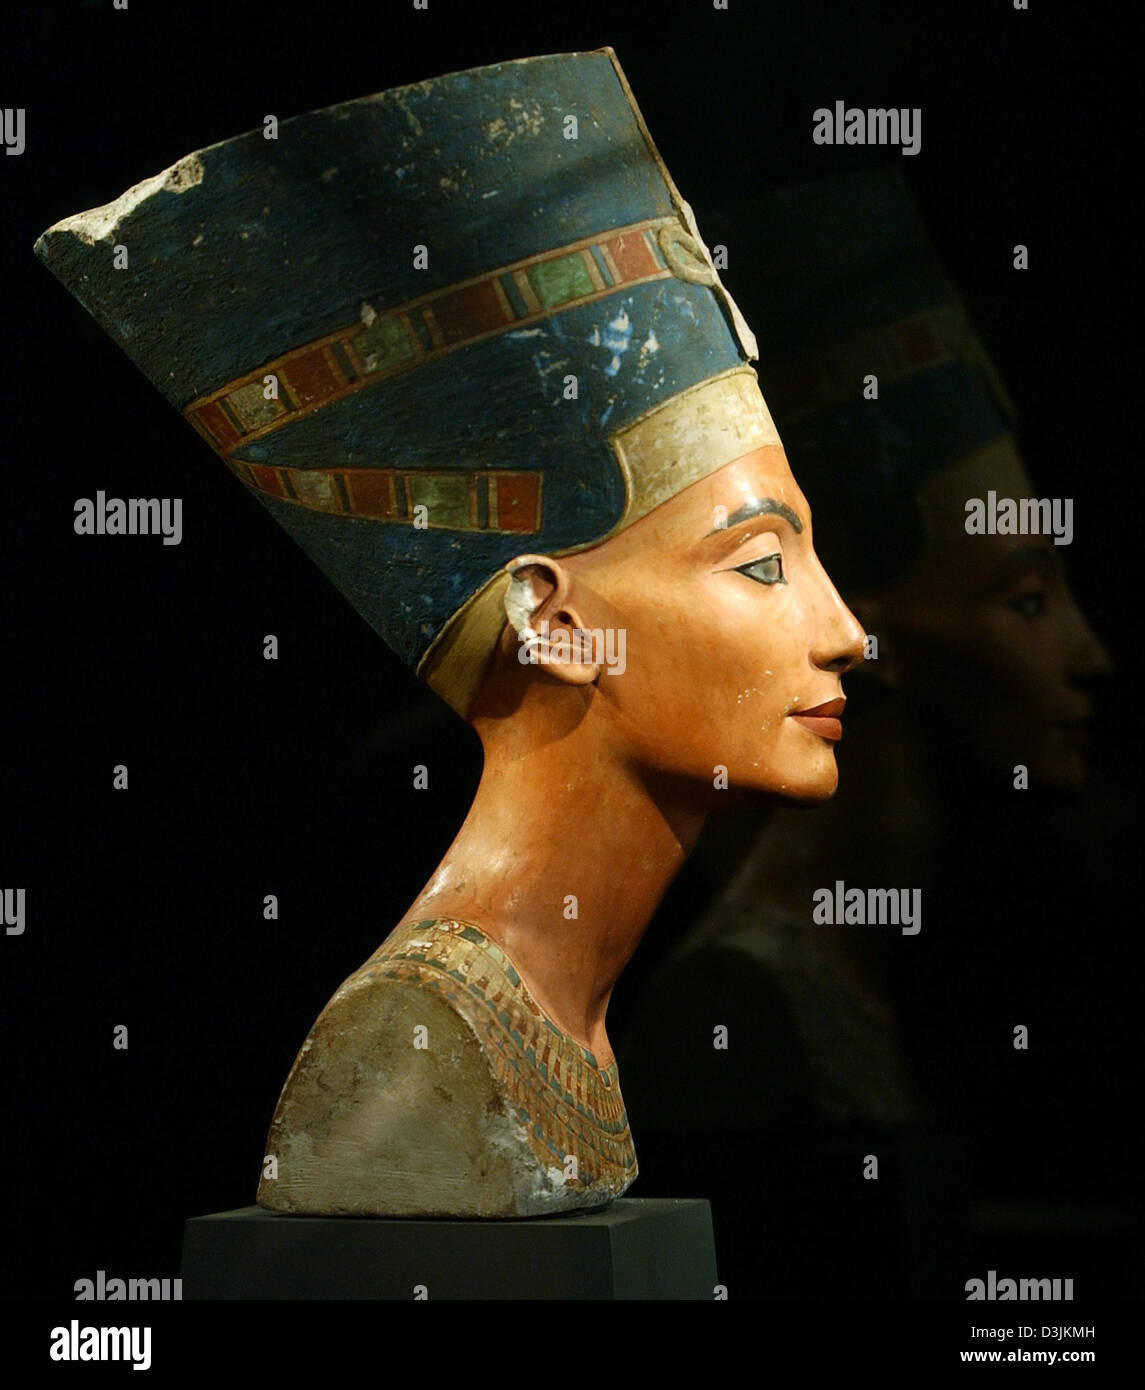 (Afp) - le buste de la reine égyptienne Néfertiti (1 340 avant J.-C., 18ème dynastie), représenté à son showcase au musée égyptien de Berlin, Allemagne, 10 février 2005. Nefertiti seront exposées dans son nouveau lieu sur le useumsinsel' (île des musées) à compter du 3 août 2005. La collection se déplace de 'château de Charlottenburg' (Charlotten) à la 'Alte Museum' (ancien musée). Banque D'Images